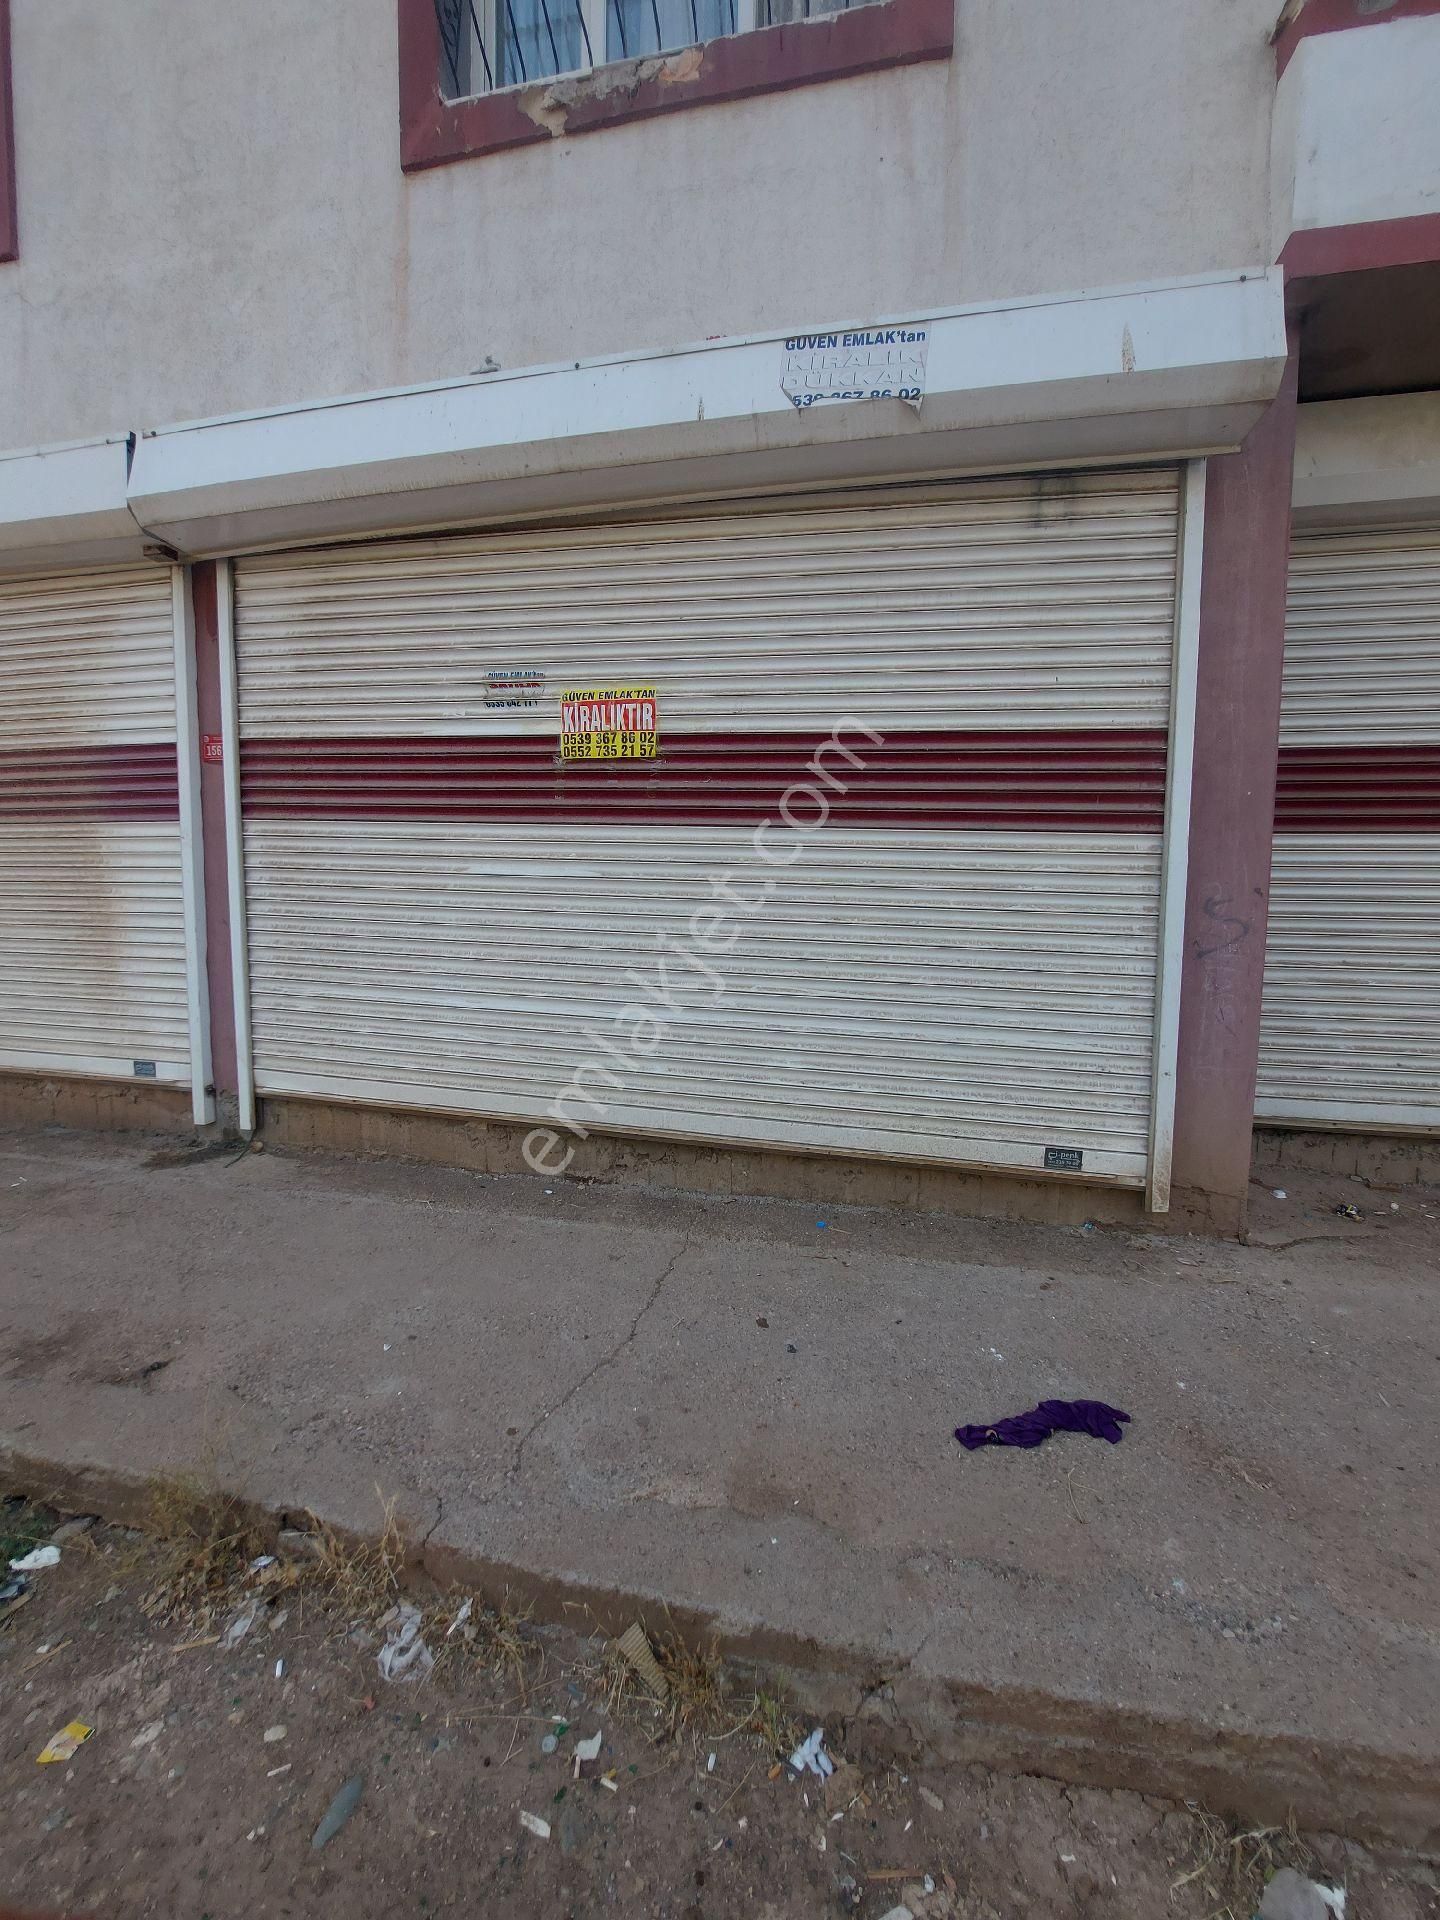 Yenişehir Şehitlik Kiralık Dükkan & Mağaza Guven emlaktan kiralık dukkan